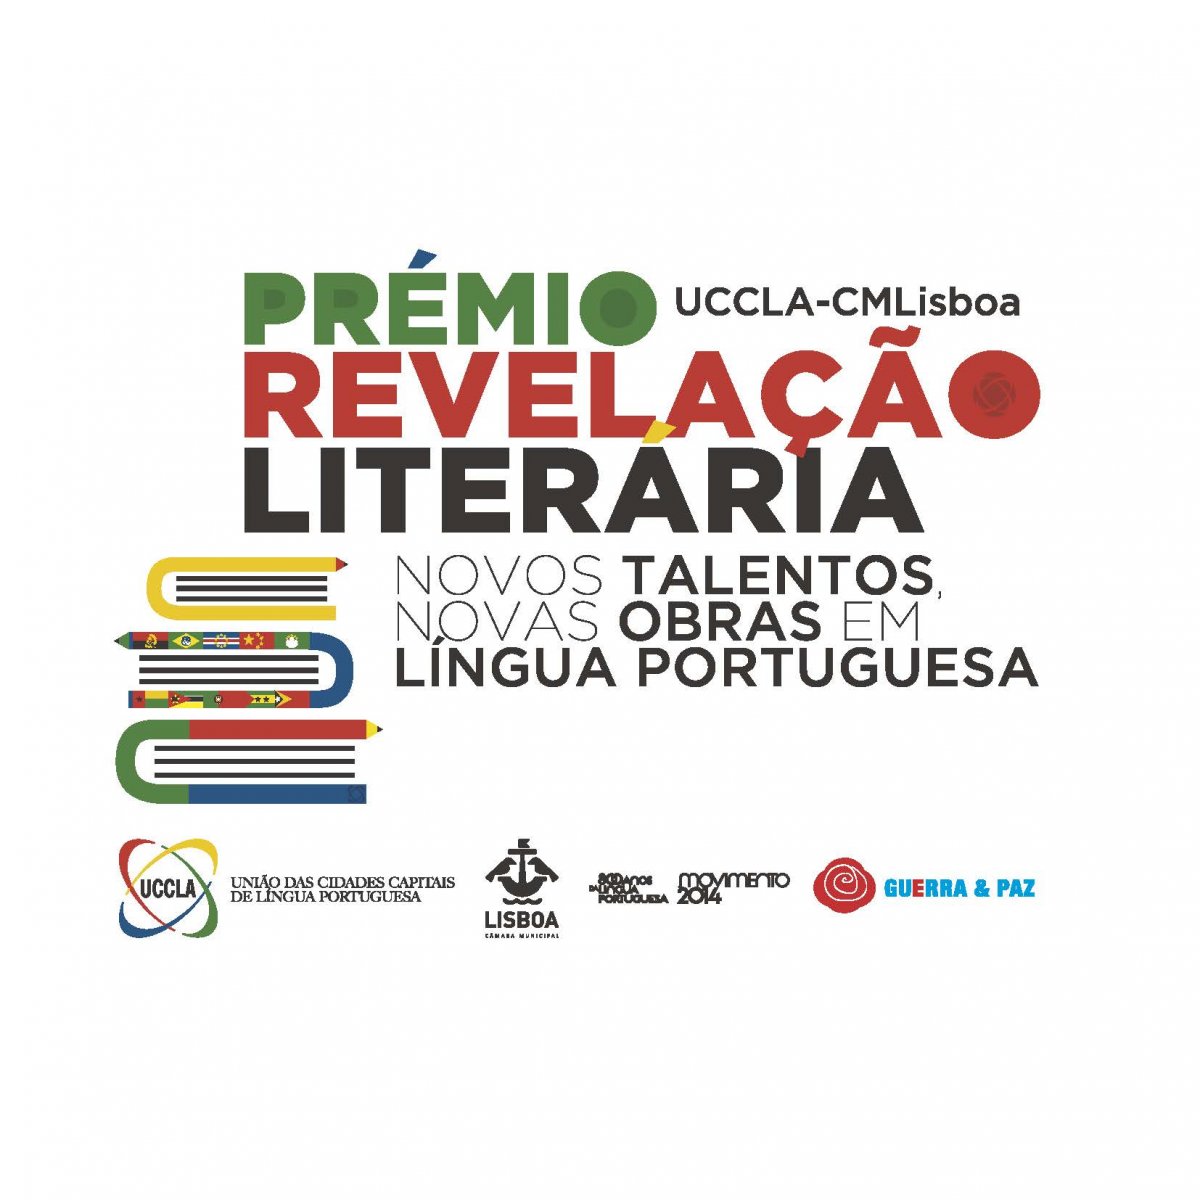 Prémio de Revelação Literária UCCLA-CMLISBOA